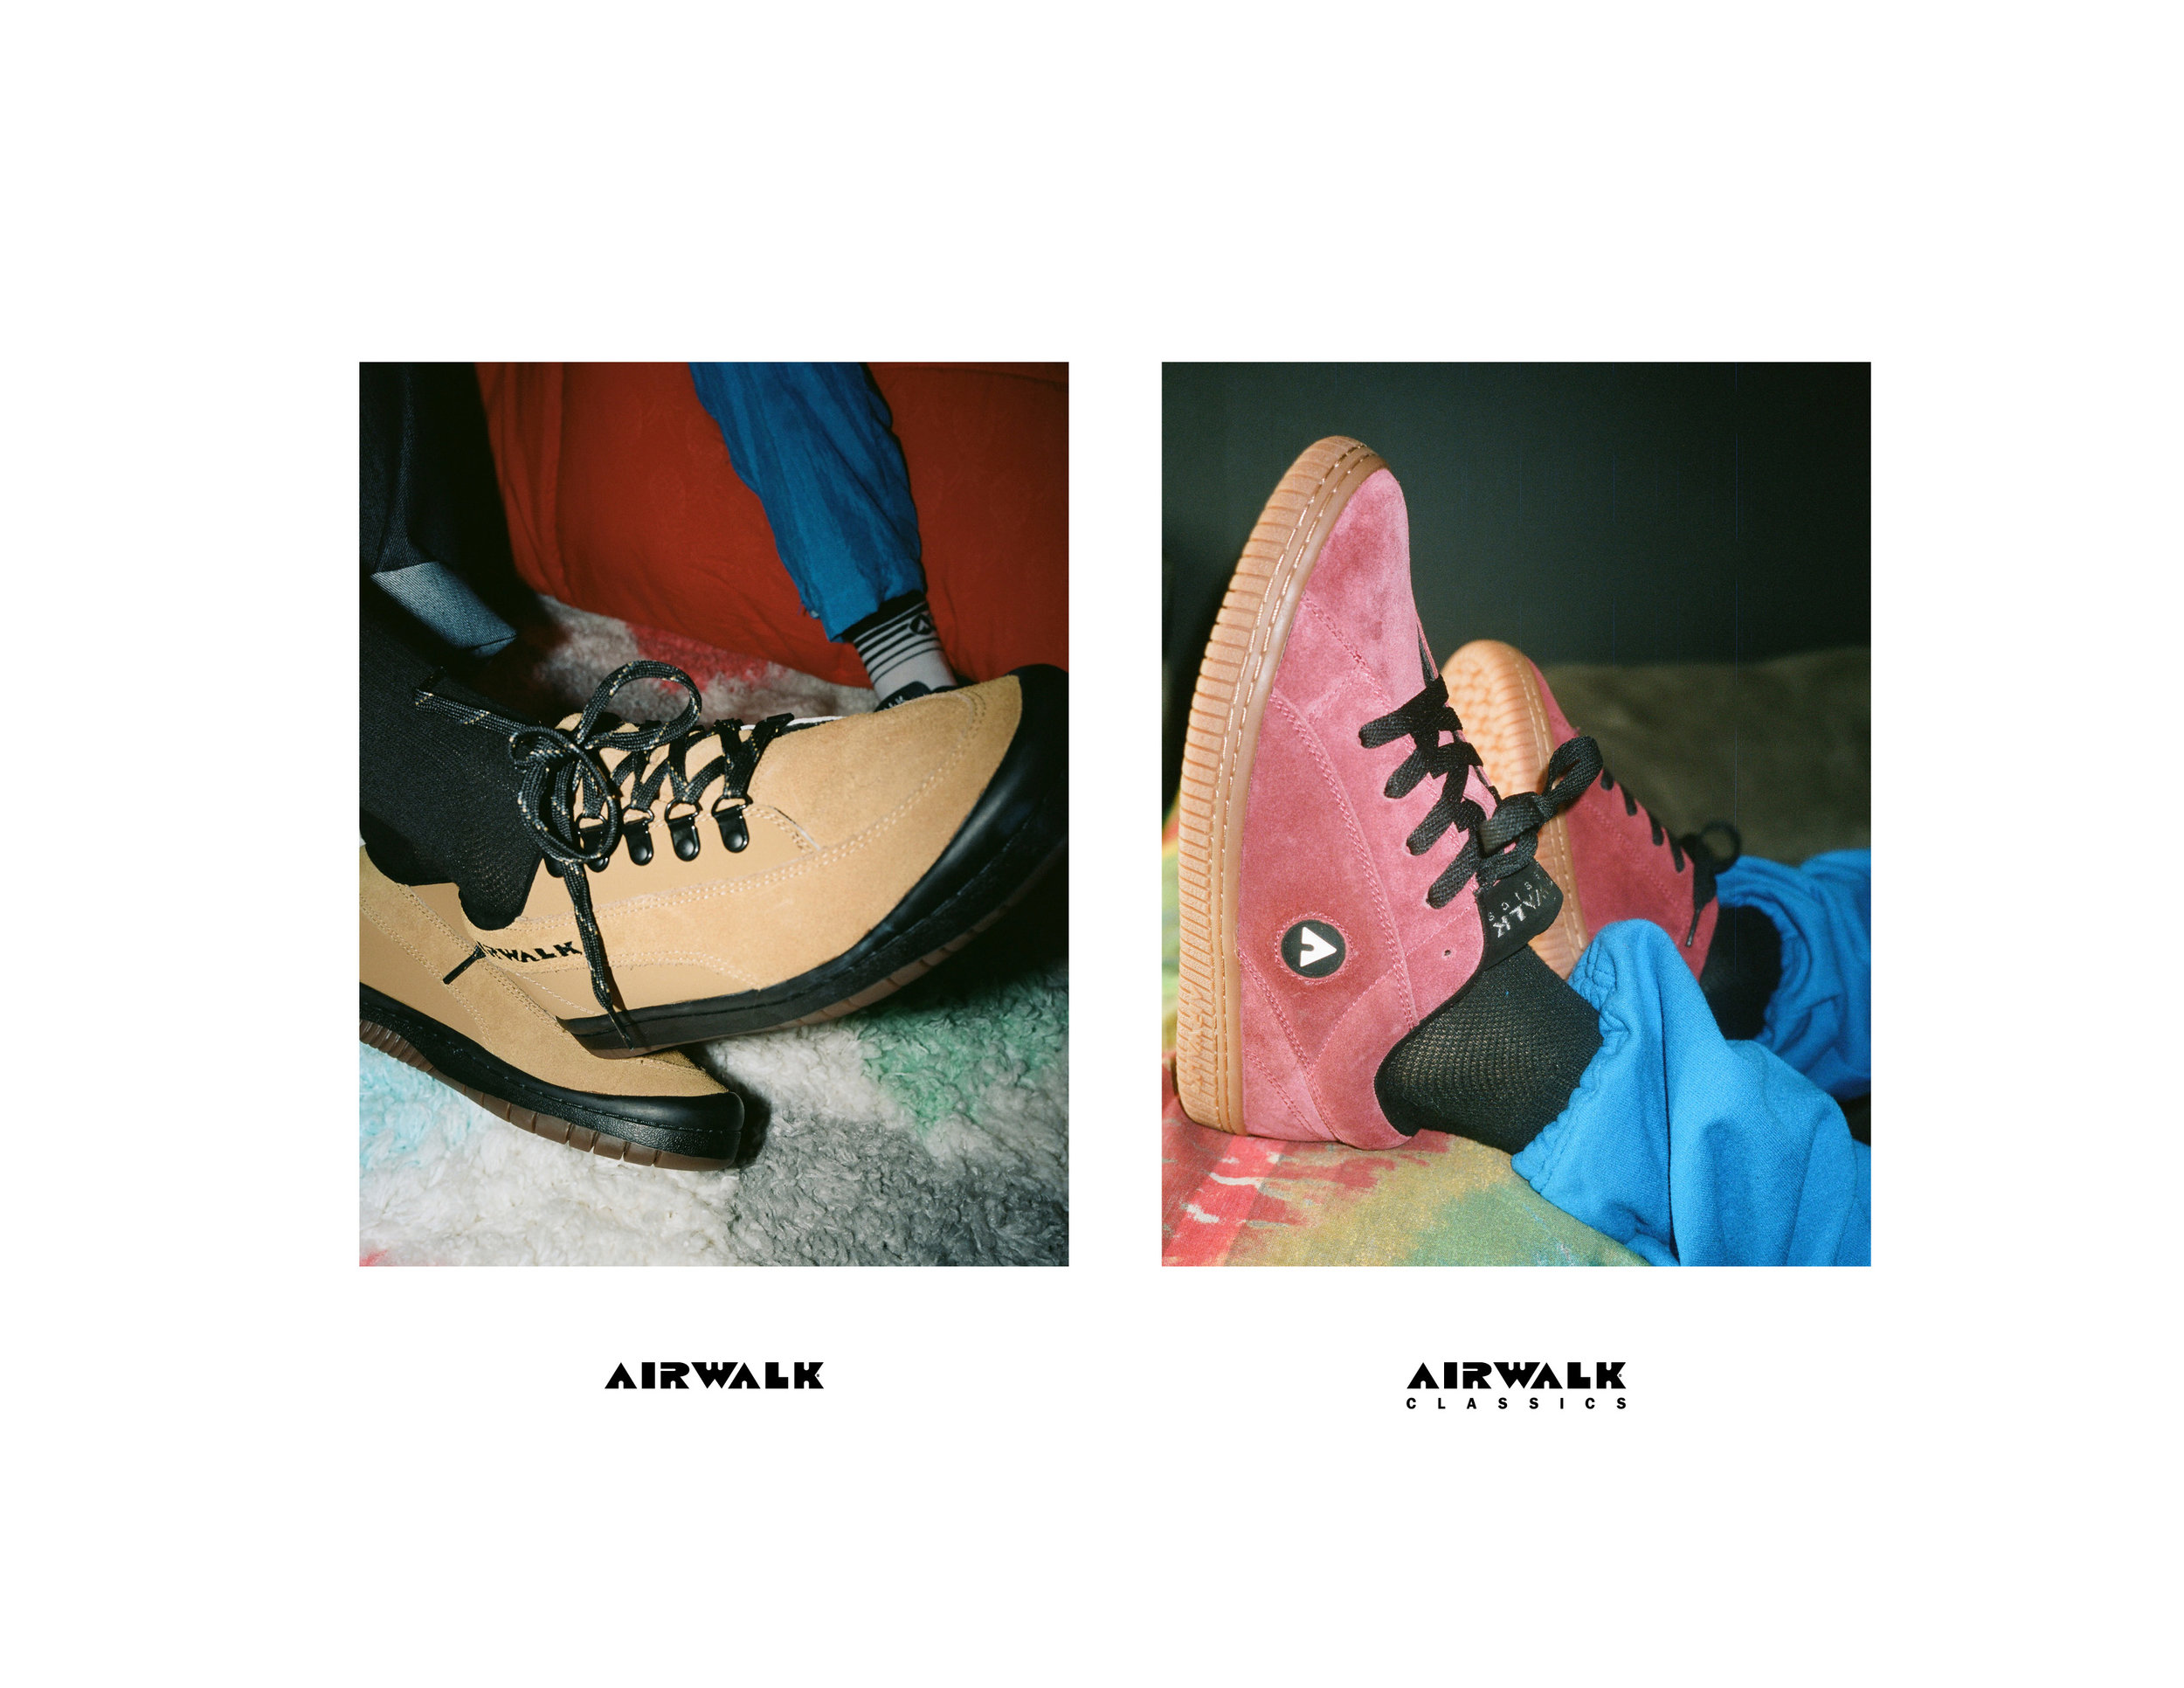 Airwalk Classics — Airwalk